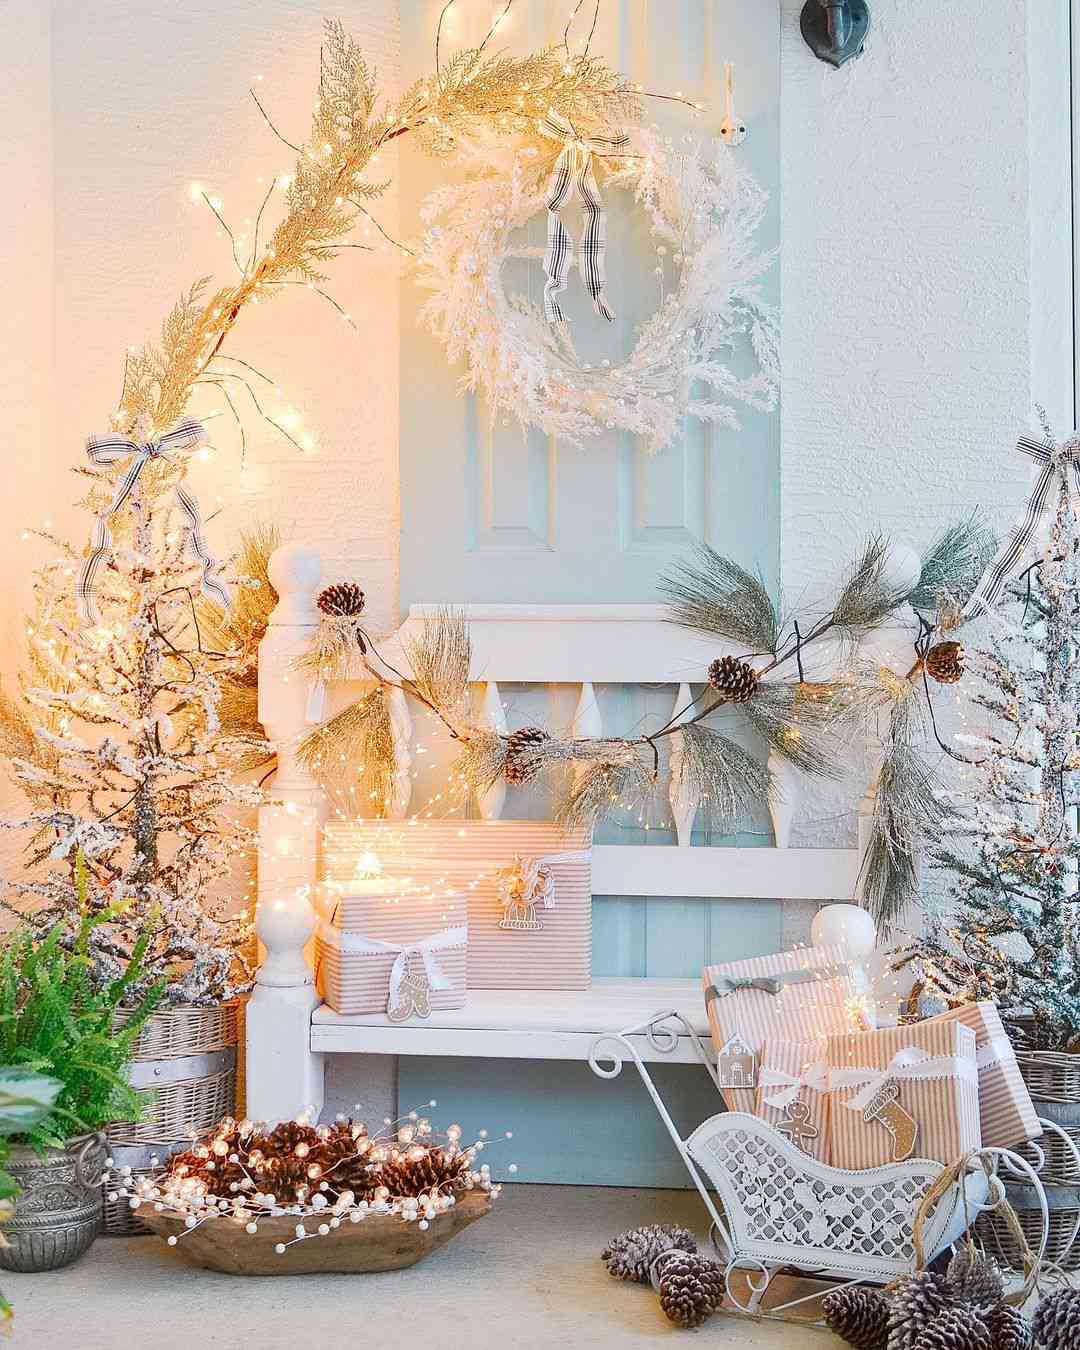 Khung cảnh mùa Đông tuyết trắng nhưng không hề lạnh lẽo nhờ những dây đèn Led được sử dụng để trang trí xung quanh cây thông Noel và lẵng quả thông lấp lánh.